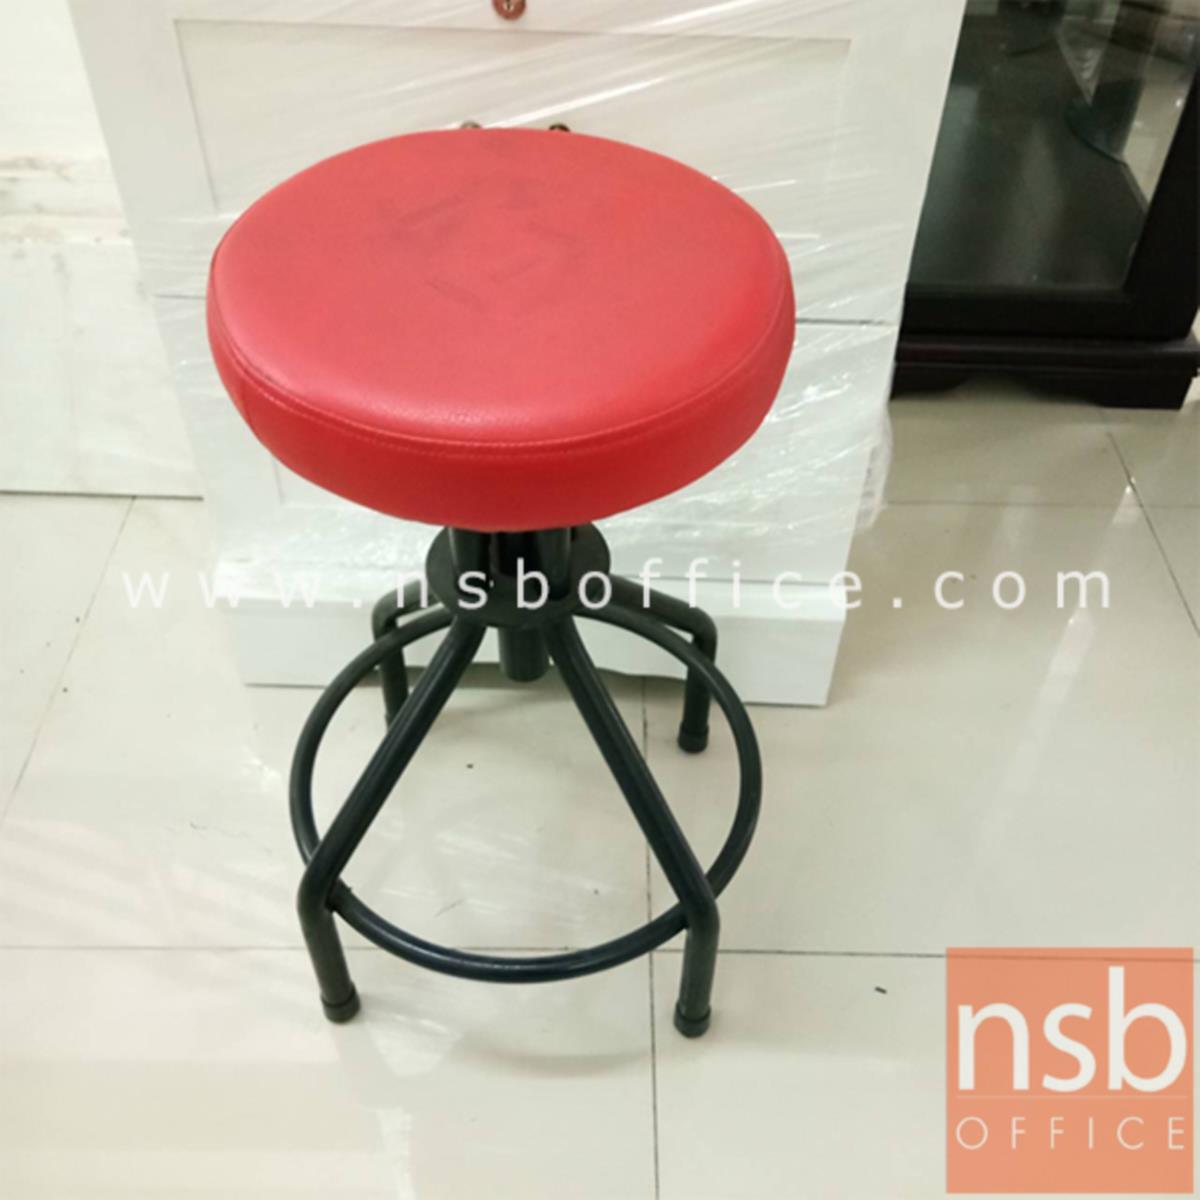  เก้าอี้ สีแดง ขาดำ ขนาด32*63*63ซม.   